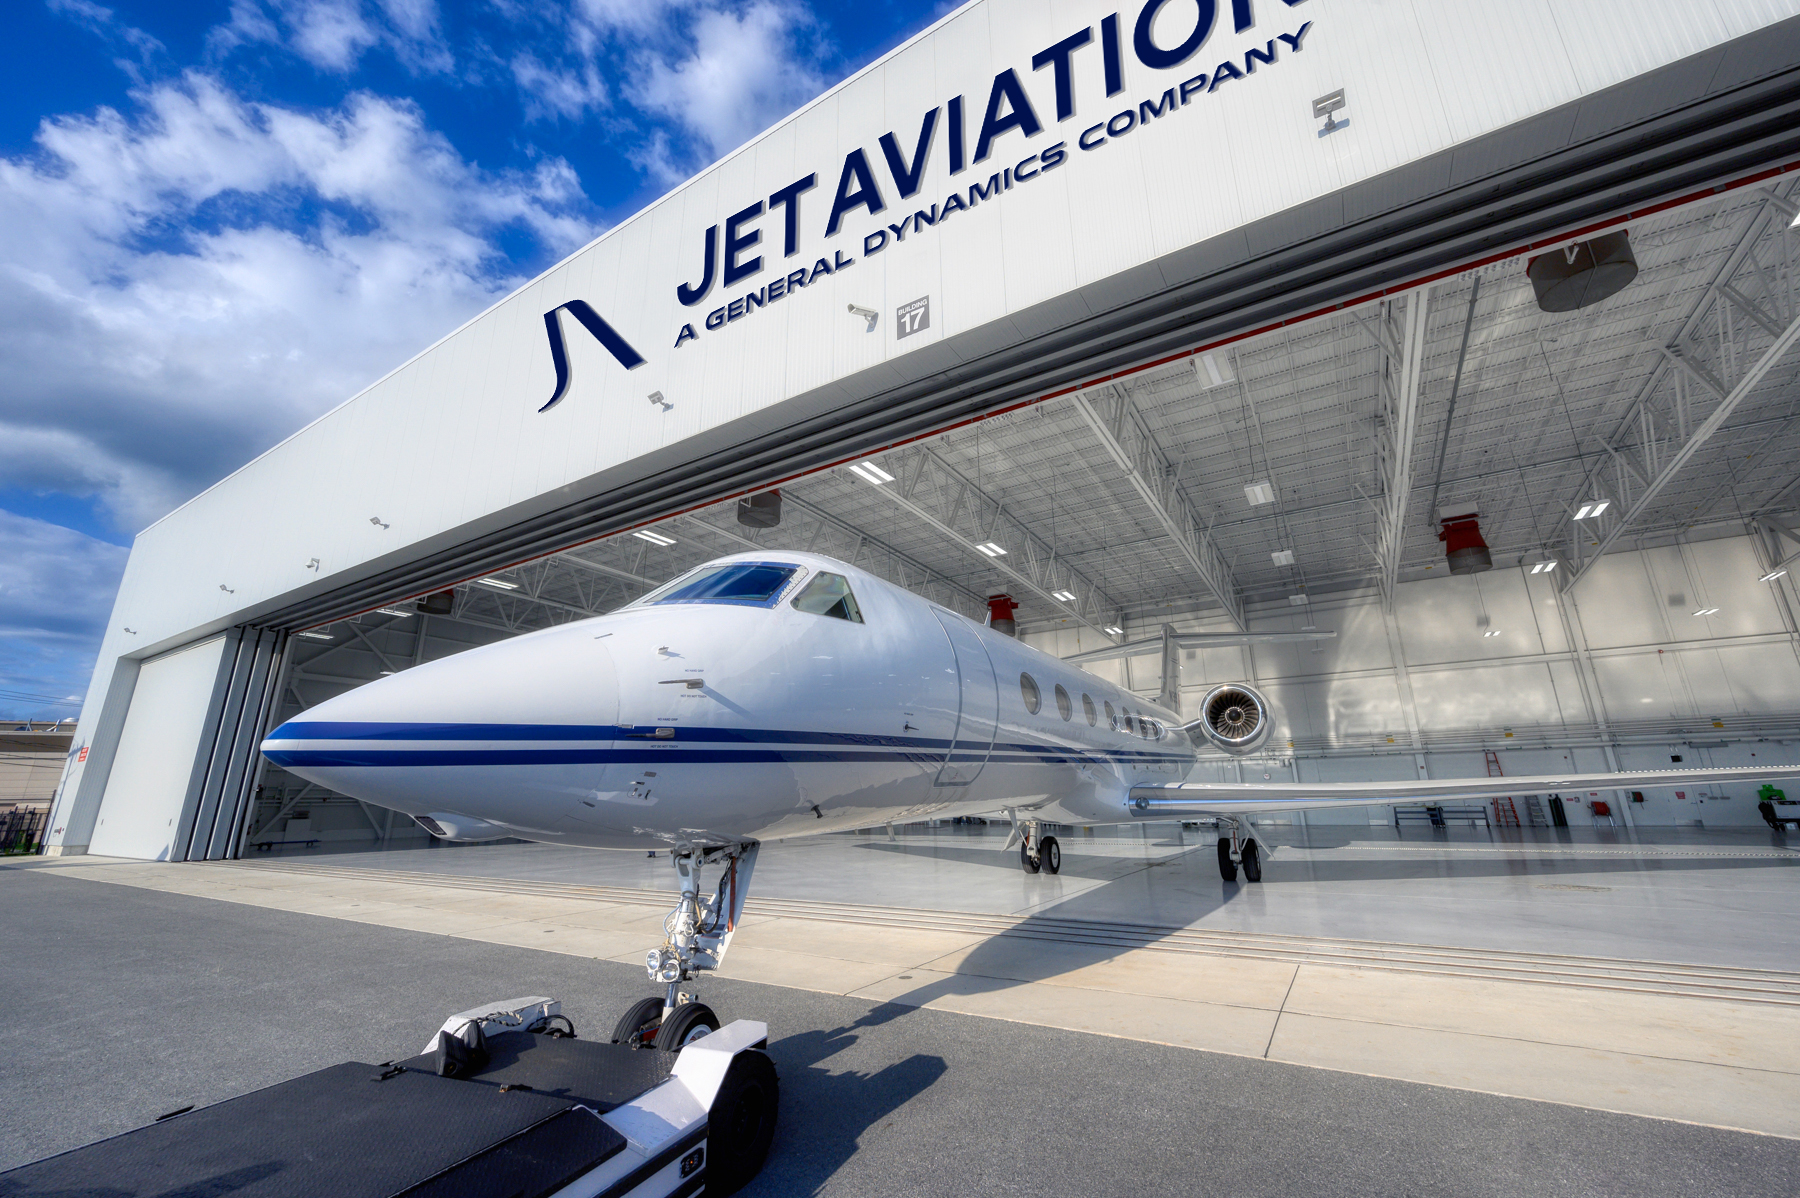 Jet Aviation hanger